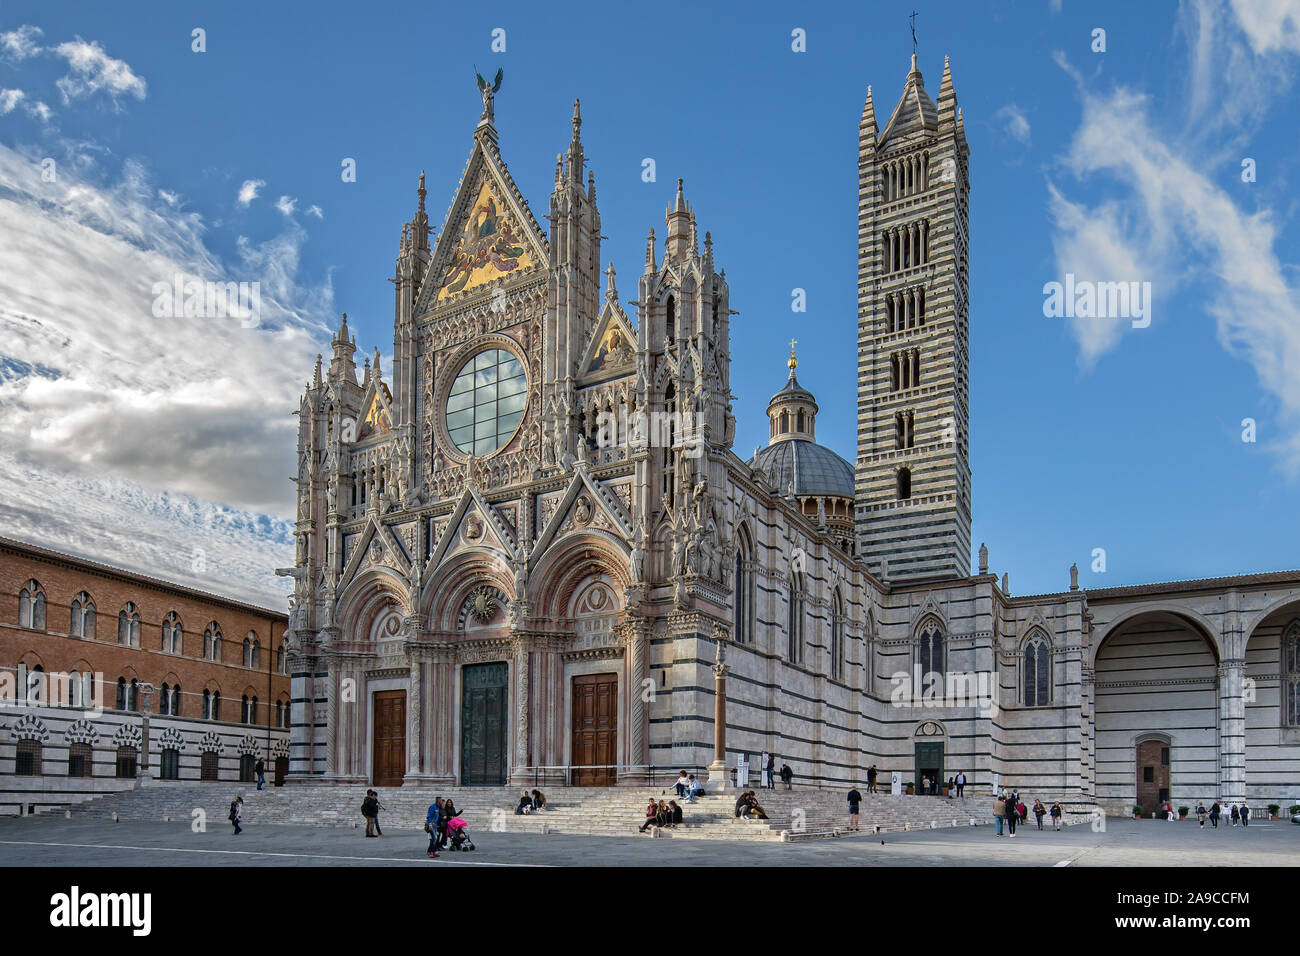 Los turistas visitan la catedral de Siena. Duomo di Siena es una catedral románico-gótica es una importante atracción turística en Siena, Toscana, Italia Foto de stock